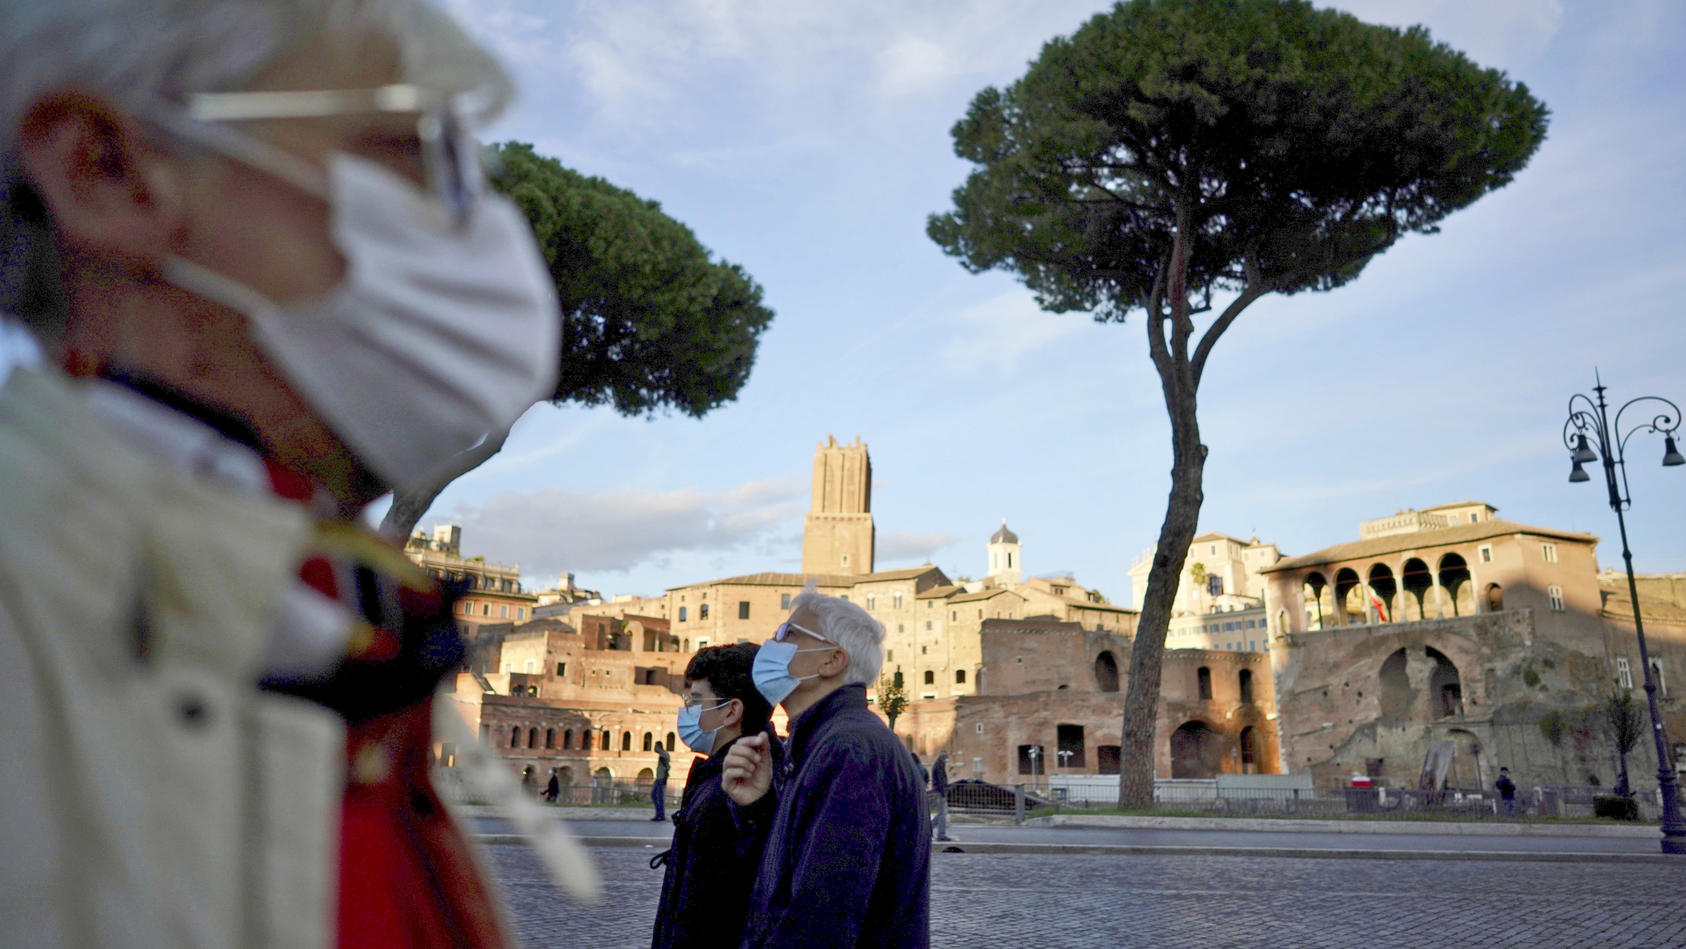 13.10.2020, Italien, Rom: Passanten mit Mund-Nasen-Bedeckungen spazieren in Rom. Italiens Regierung hat die Schutzmaßnahmen während der Corona-Pandemie weiter verschärft. Foto: Andrew Medichini/AP/dpa +++ dpa-Bildfunk +++